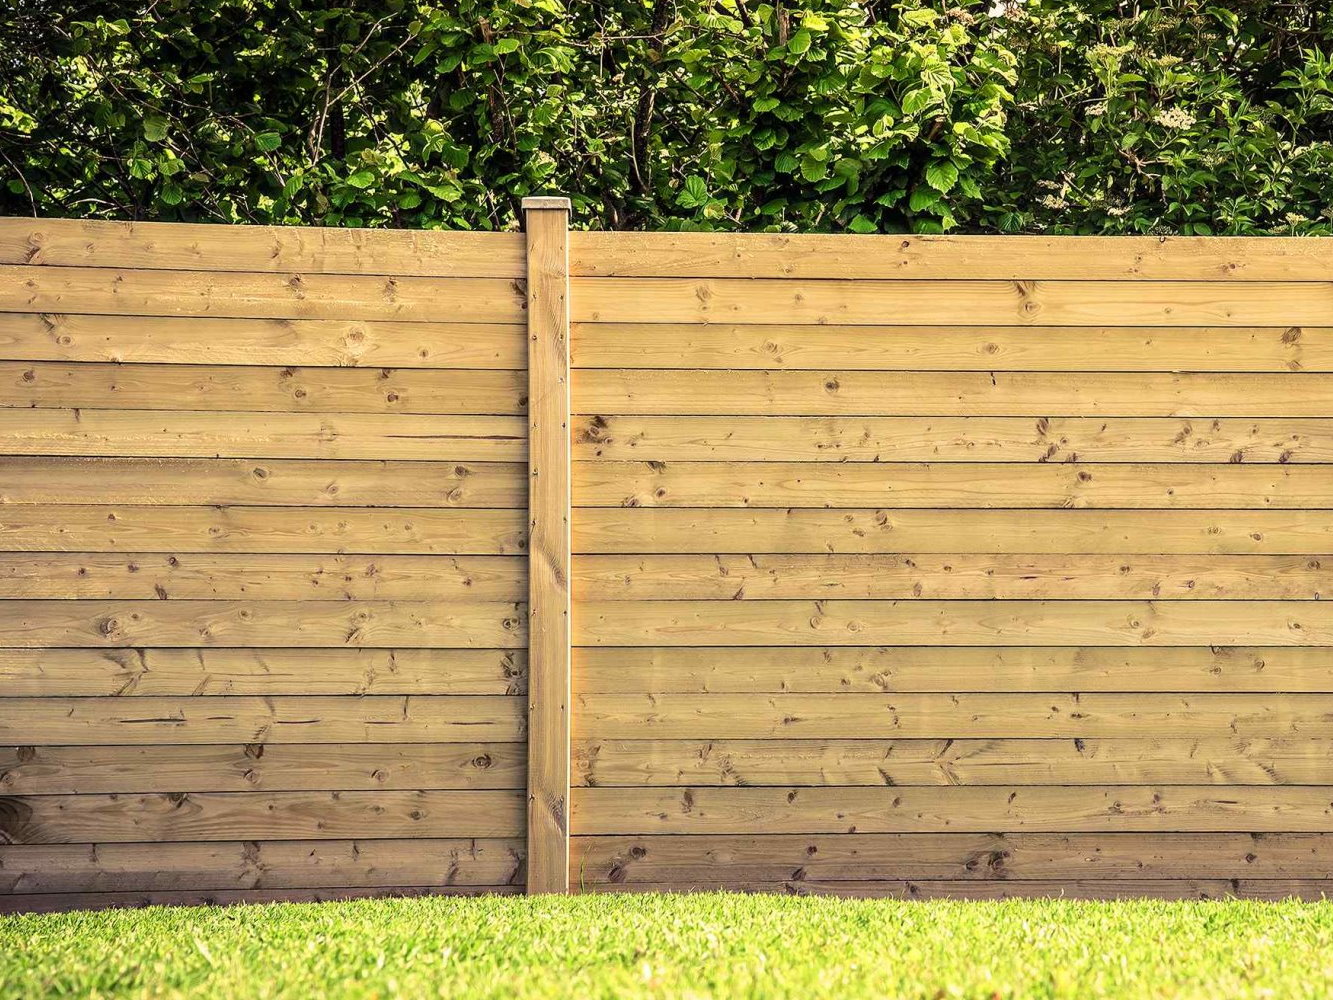 Midlothian VA horizontal style wood fence